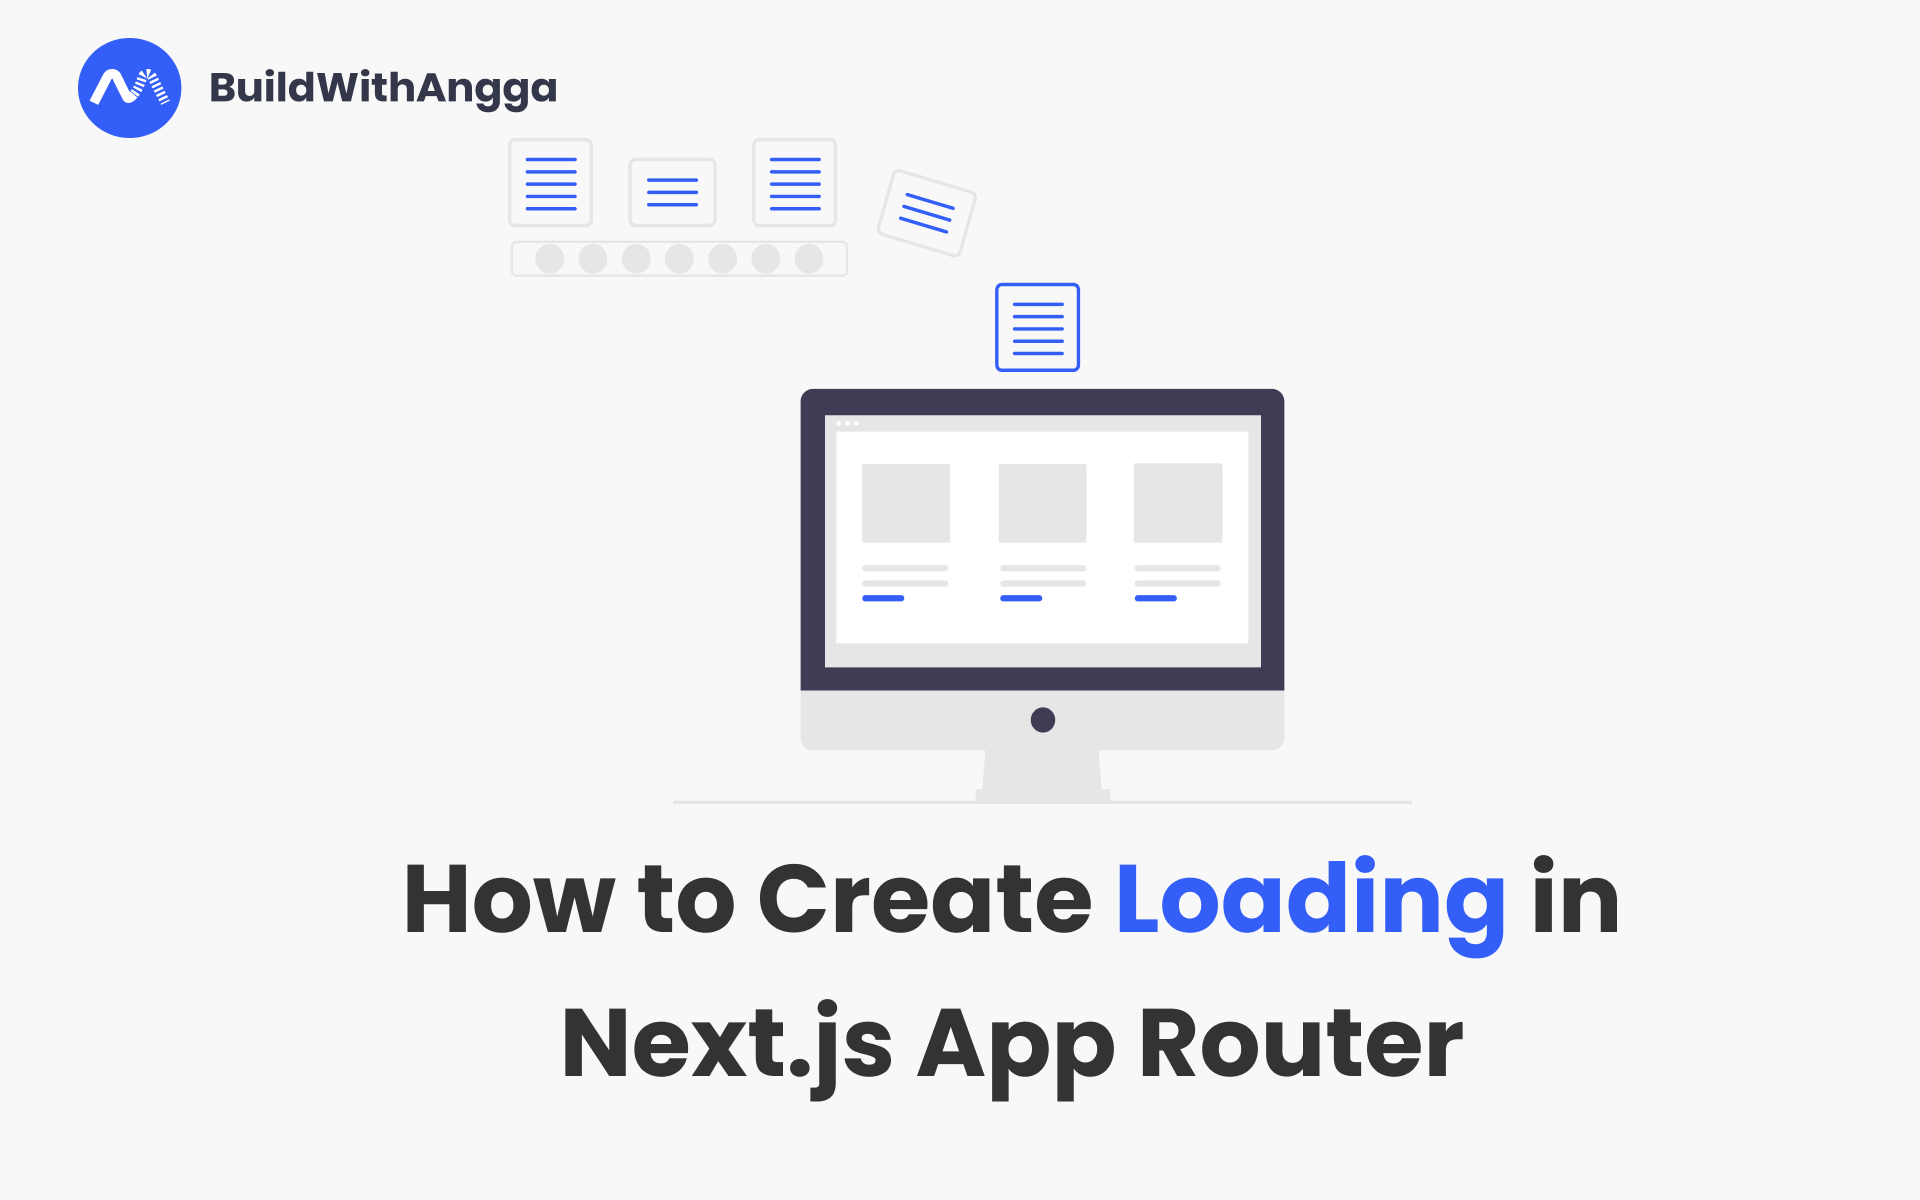 Kelas Cara Membuat Loading di Next.js  App Router di BuildWithAngga